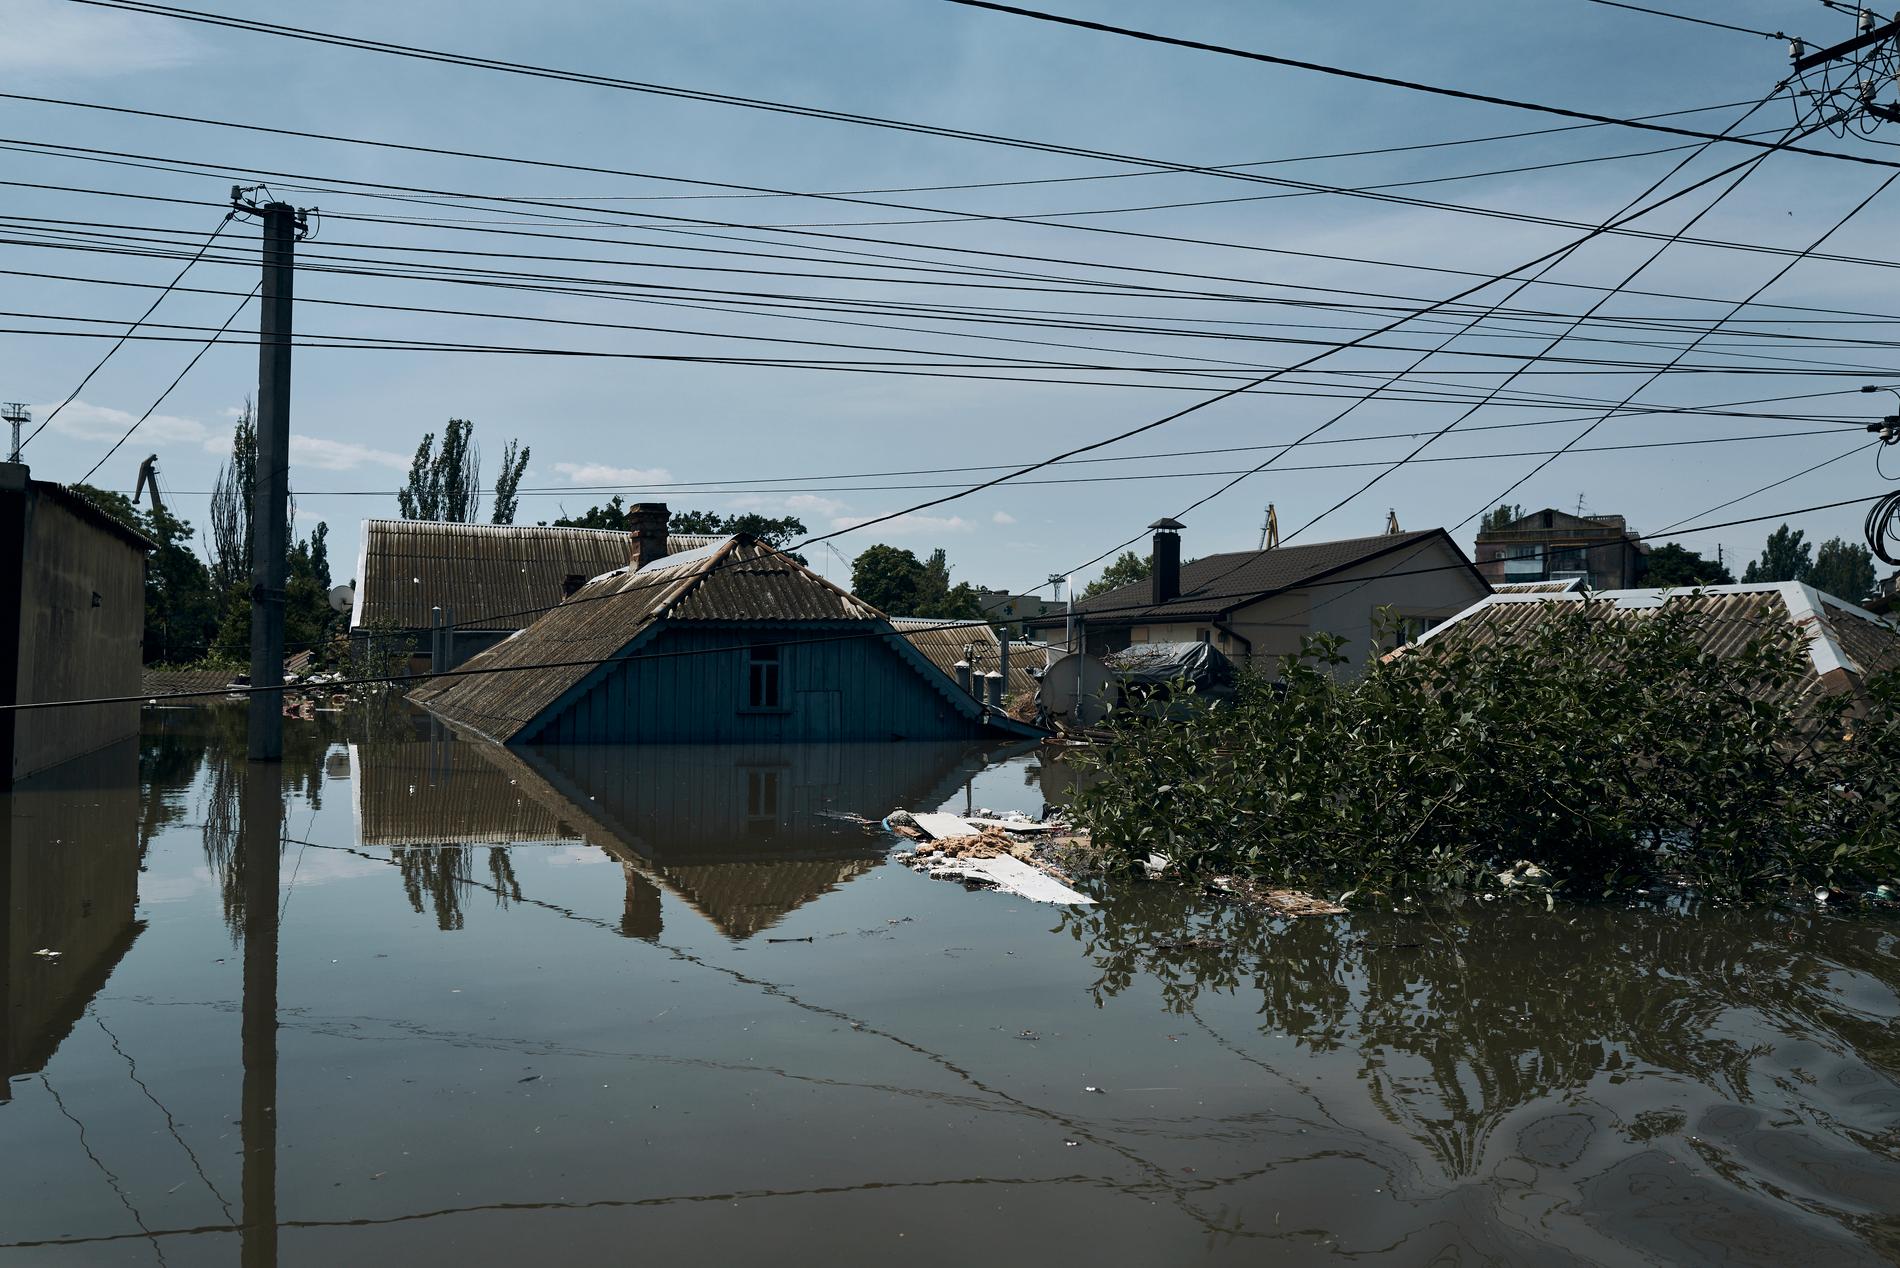 Översvämmade hus i staden Cherson i södra Ukraina.